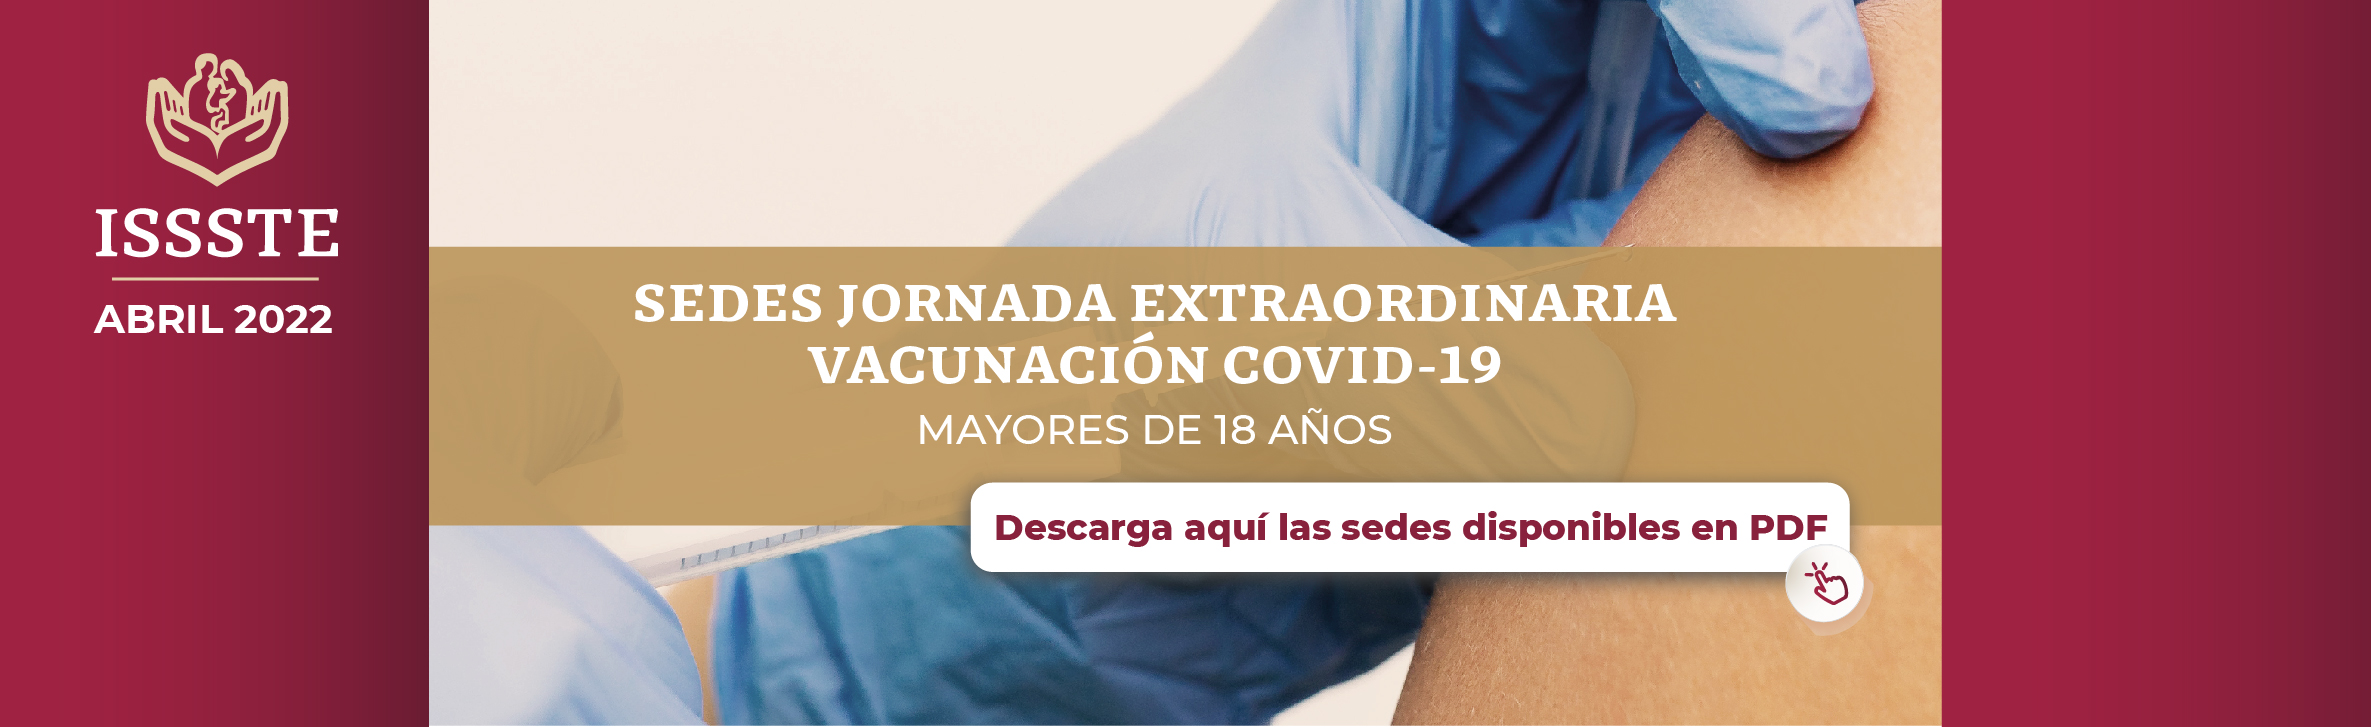 Banner Vacunacion Covid